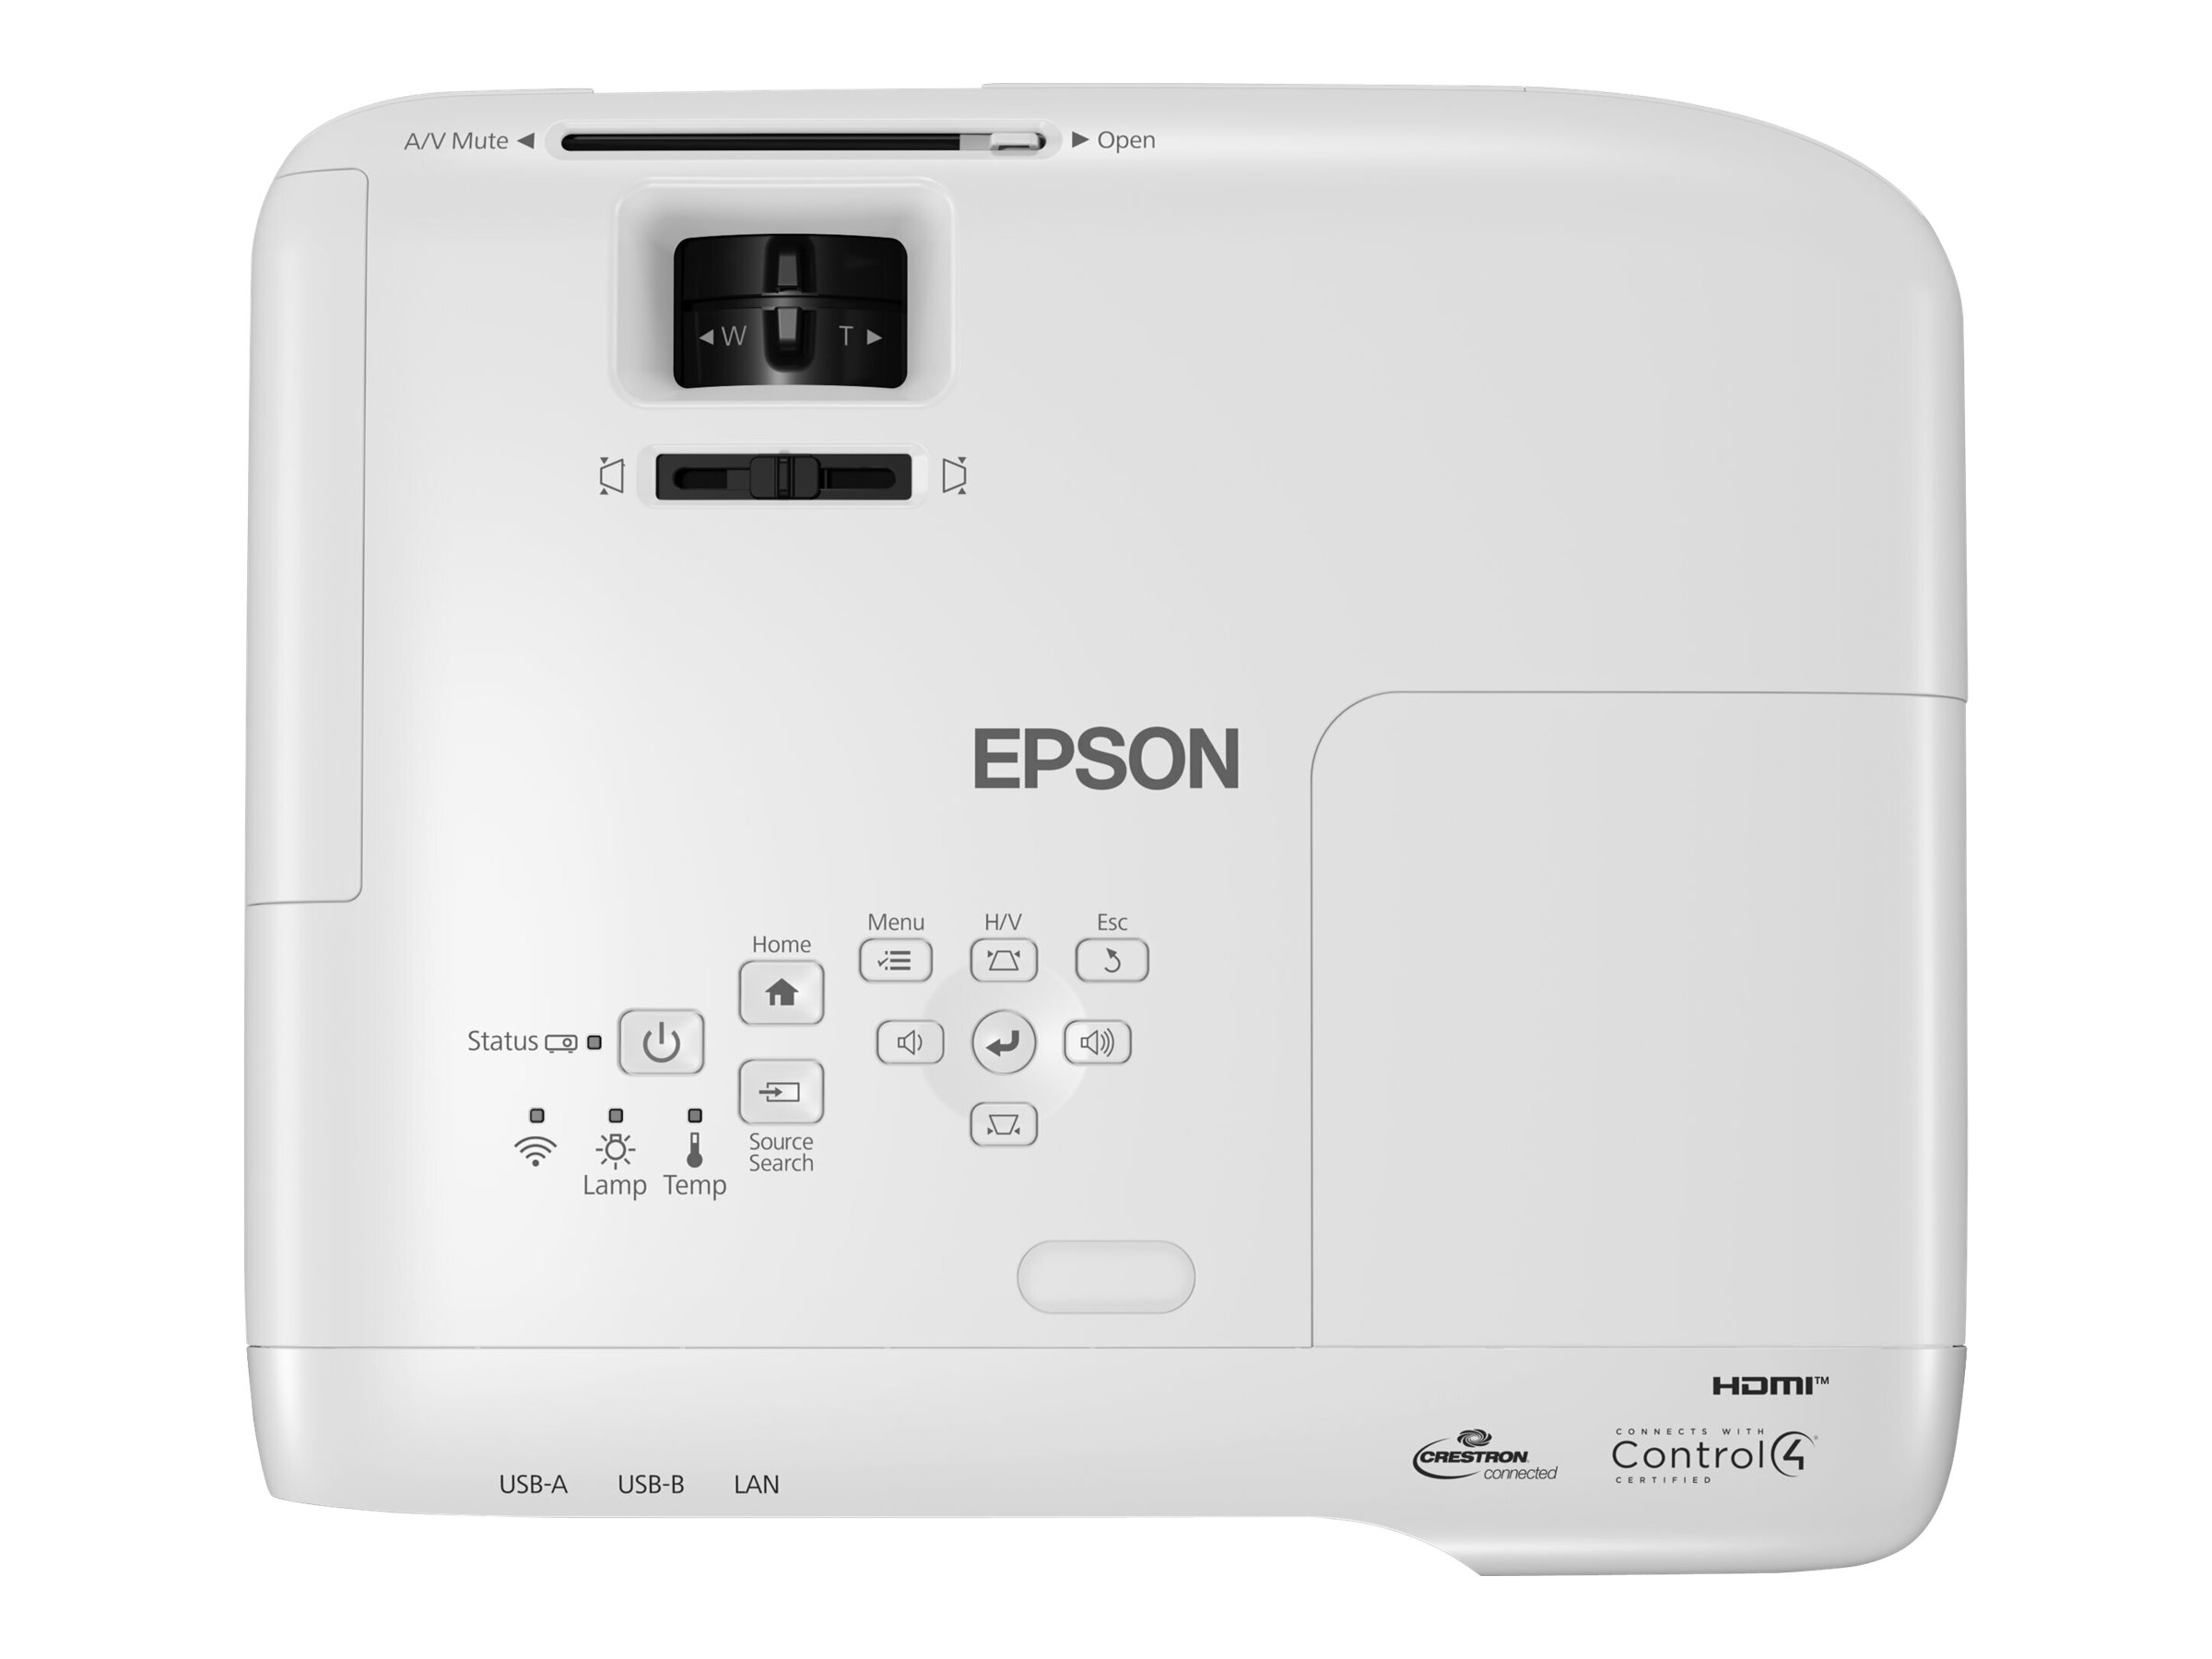 Epson EB-982W - 3-LCD-Projektor - 4200 lm (weiß)